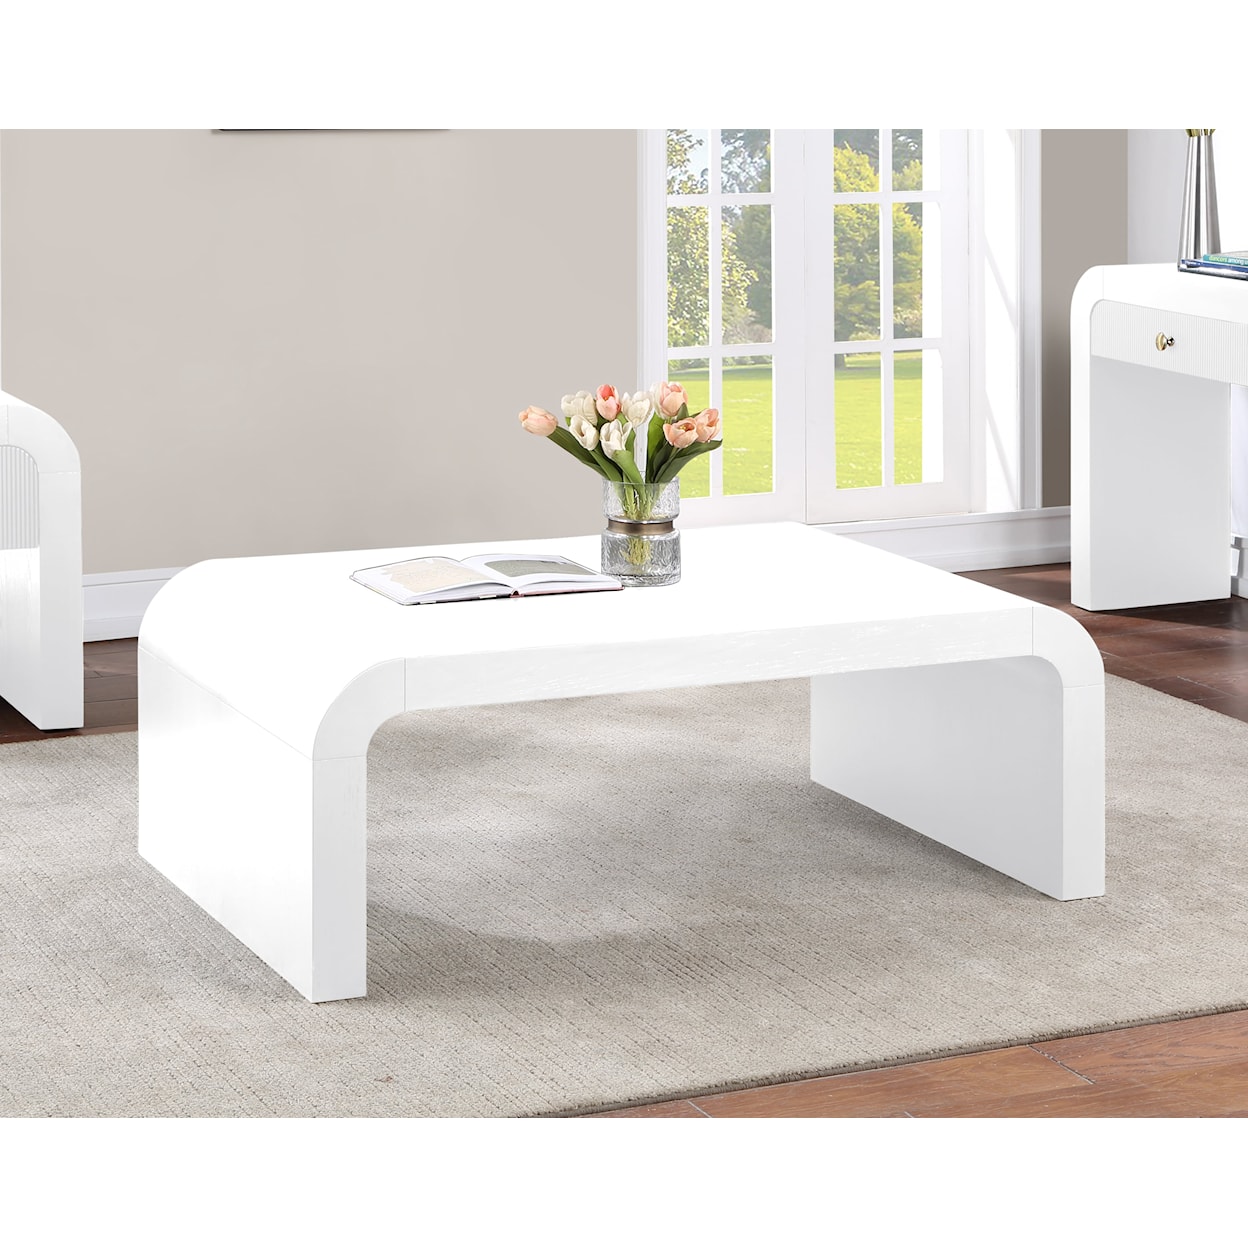 Meridian Furniture Artisto Coffee Table